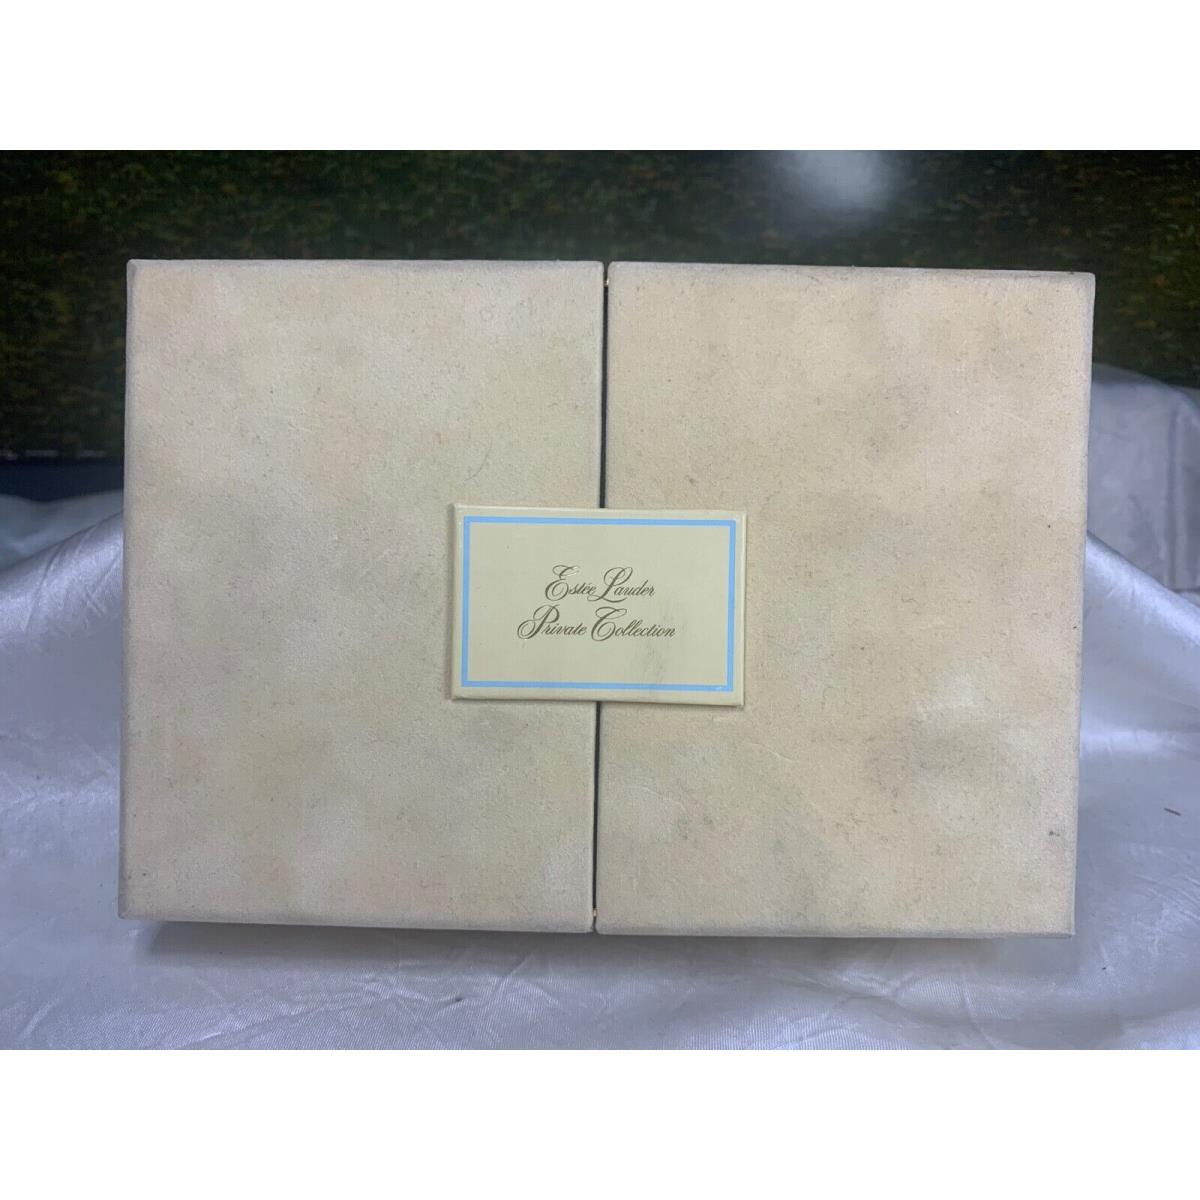 Estee Lauder Private Collection 7.5ML Parfum Mini Splash with Box